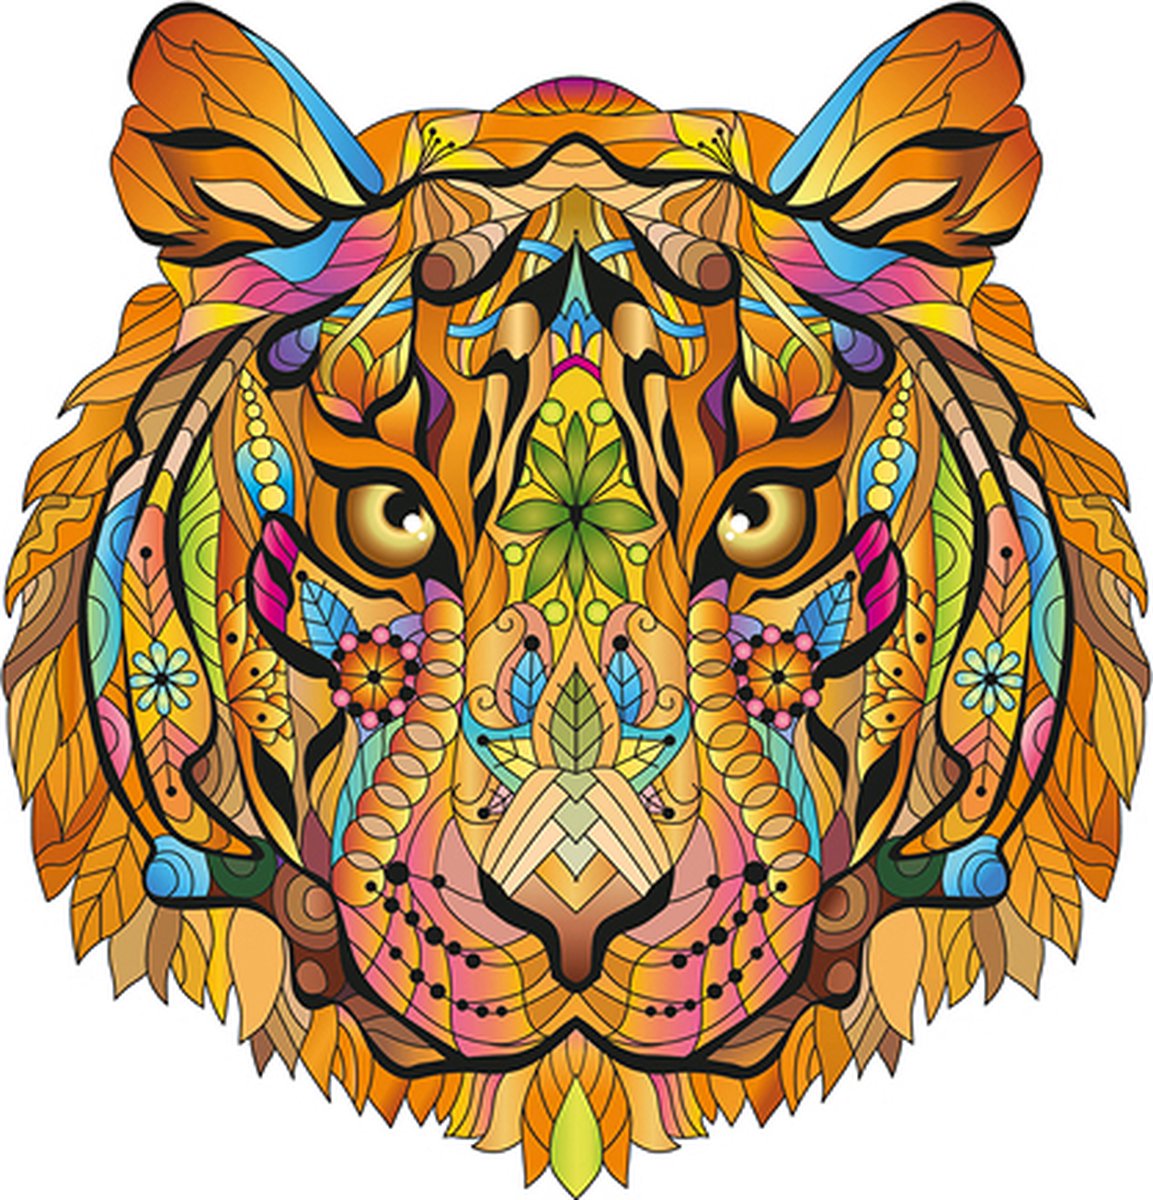 2D-puzzel tijger in hout 138pc- 2D Rainbow Wooden Puzzle tiger 138pc - puzzle en bois 2D tigre 138pc